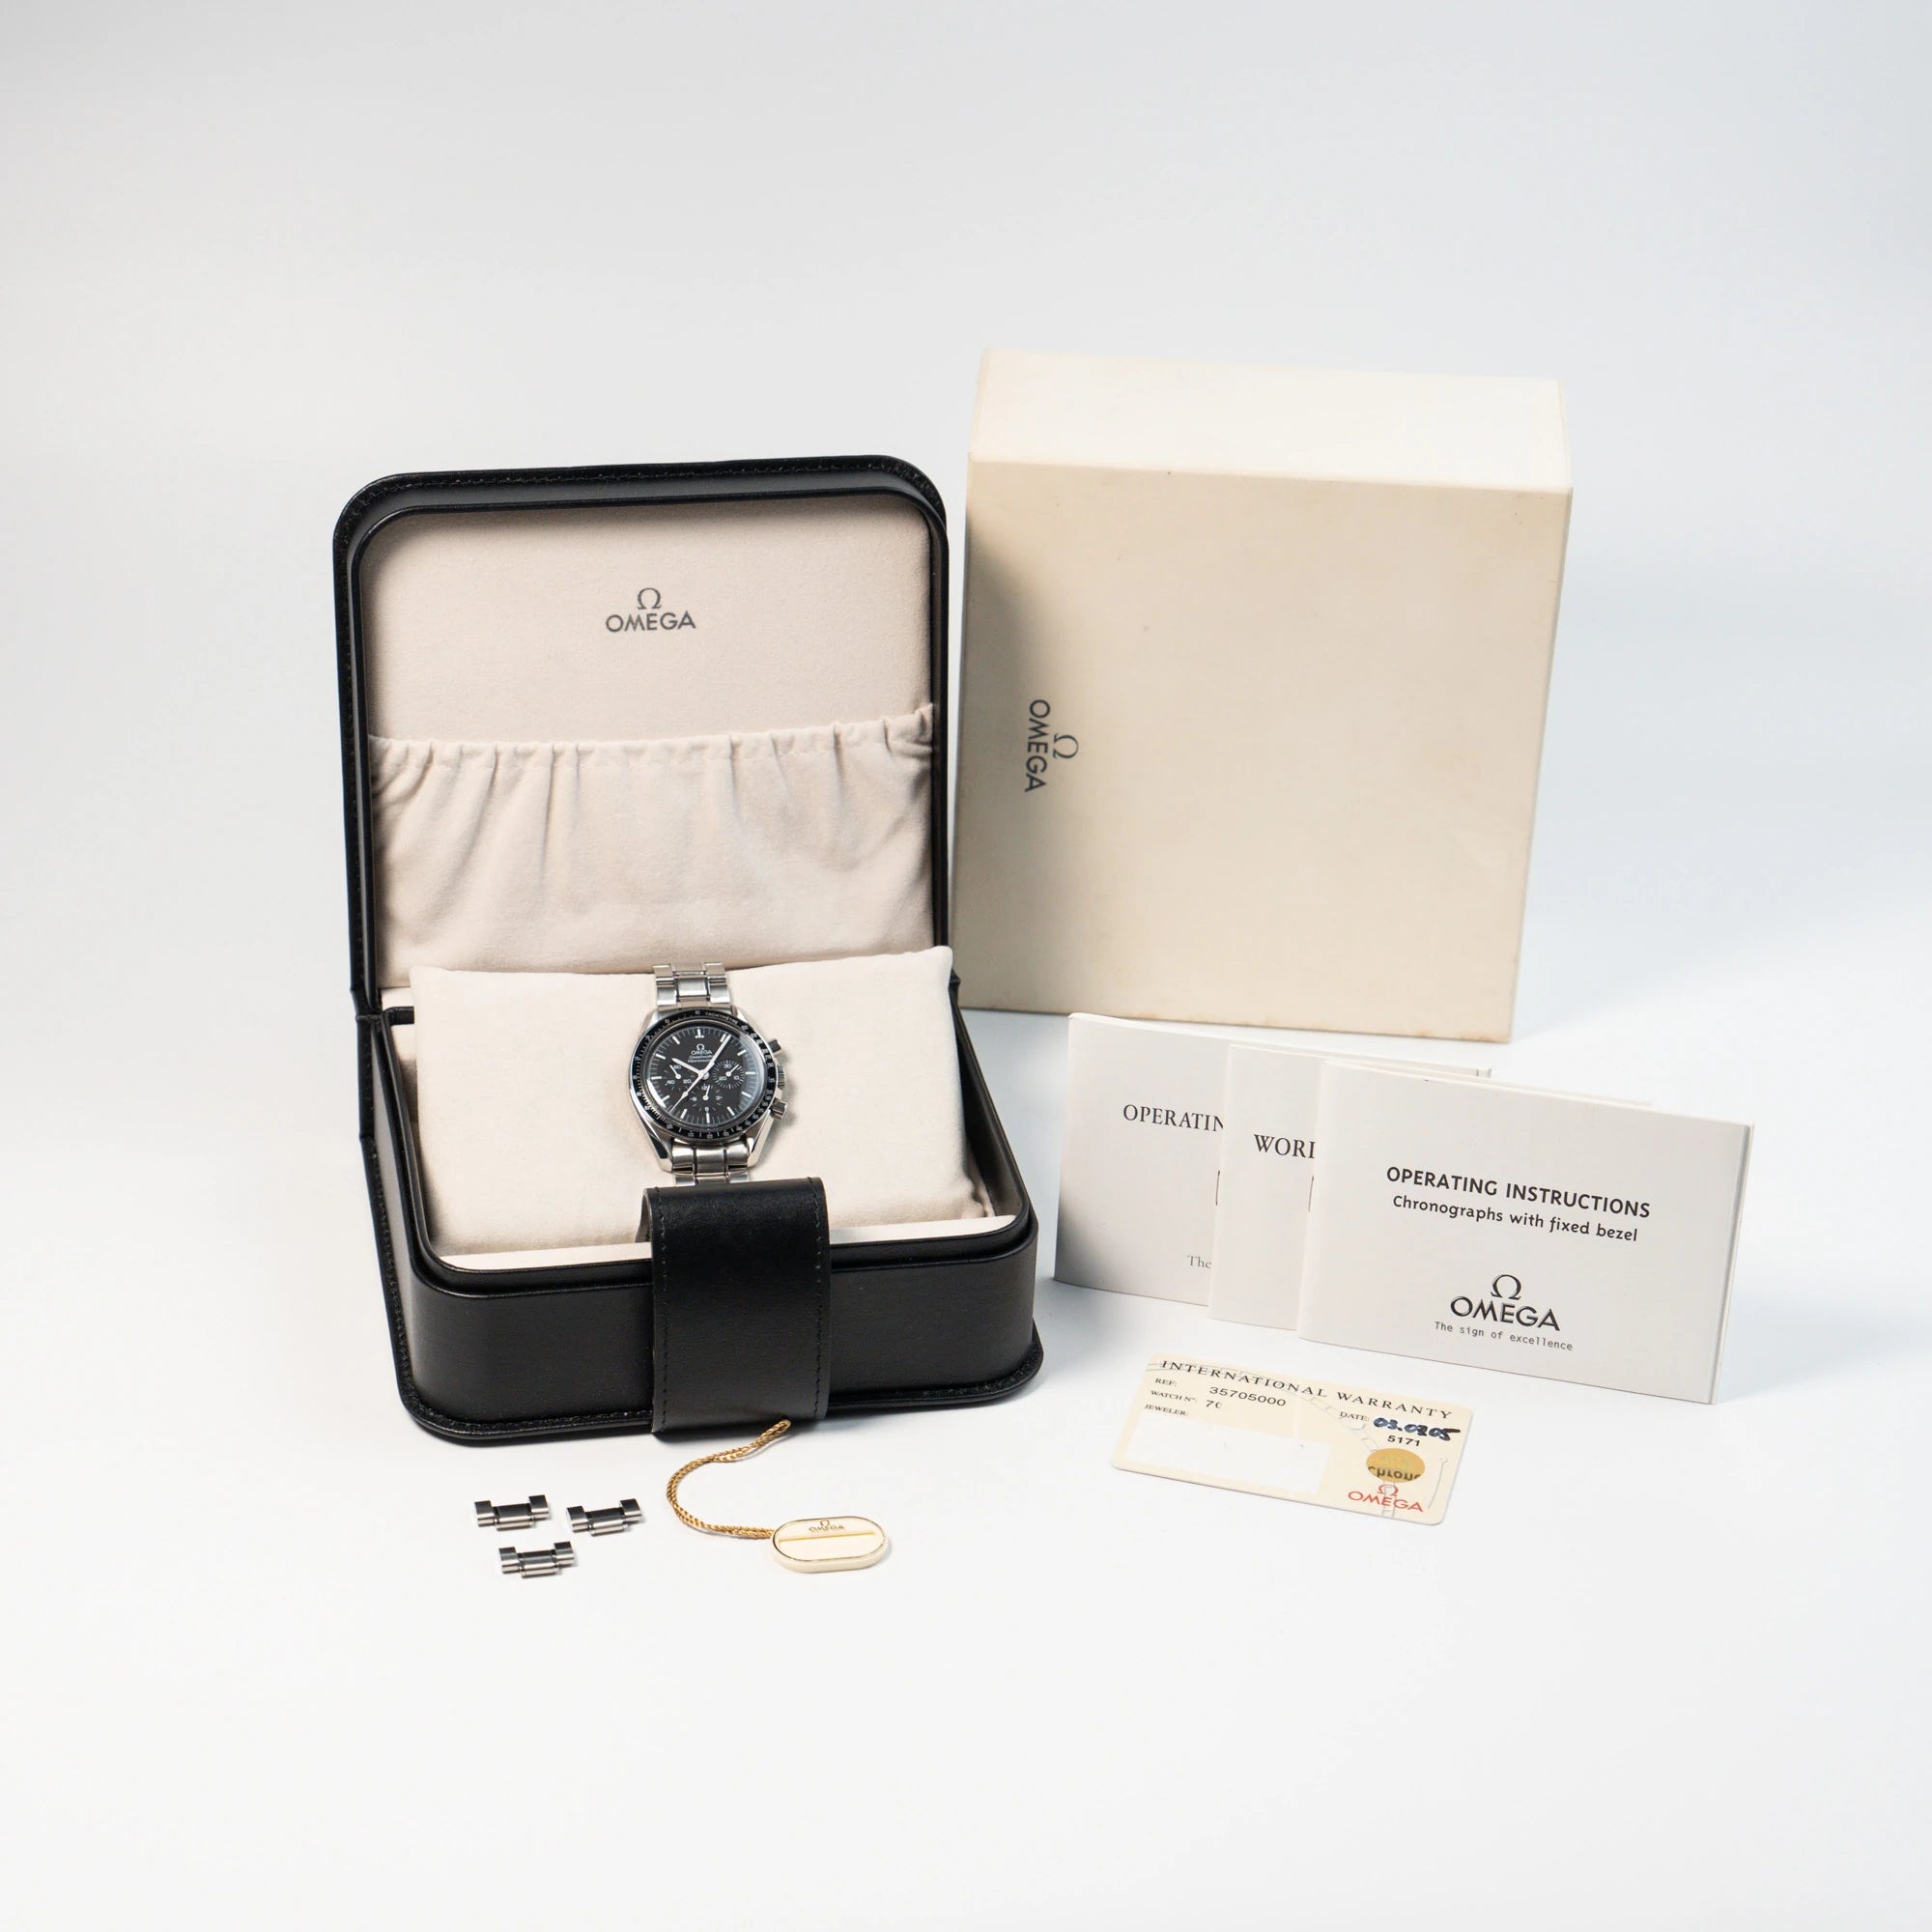 Lieferumfang der Omega Speedmaster Moonwatch Professional mit der Referenz 357.50.00 mit dem klassischen schwarzen Zifferblatt im Full-Set